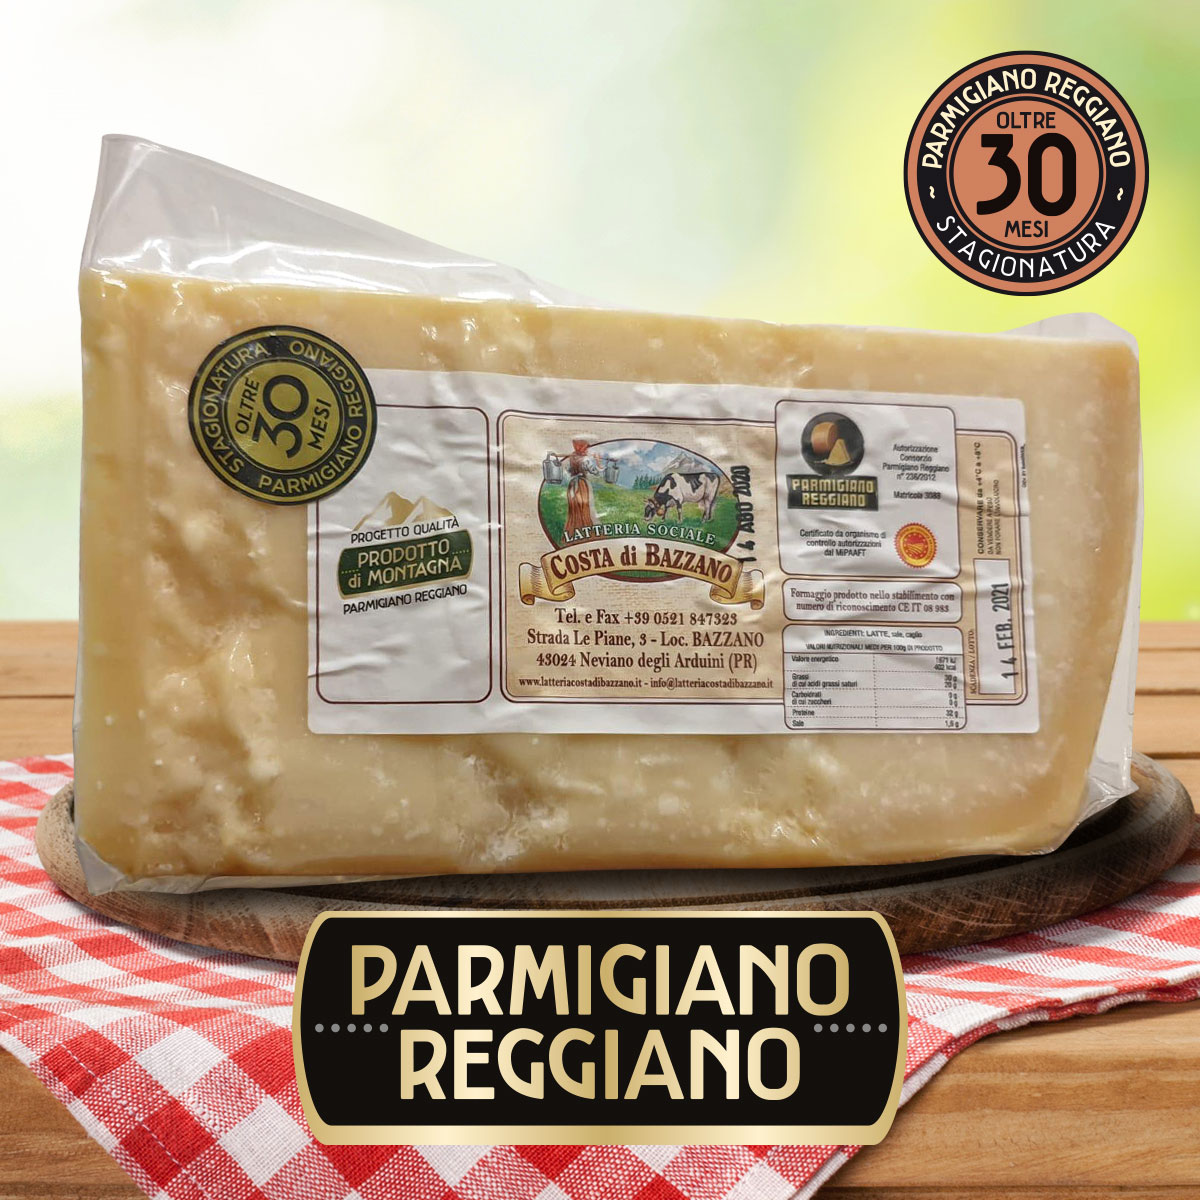 Parmigiano Reggiano di Montagna oltre 30 Mesi punta da 1 Kg del Caseificio Sociale Costa di Bazzano